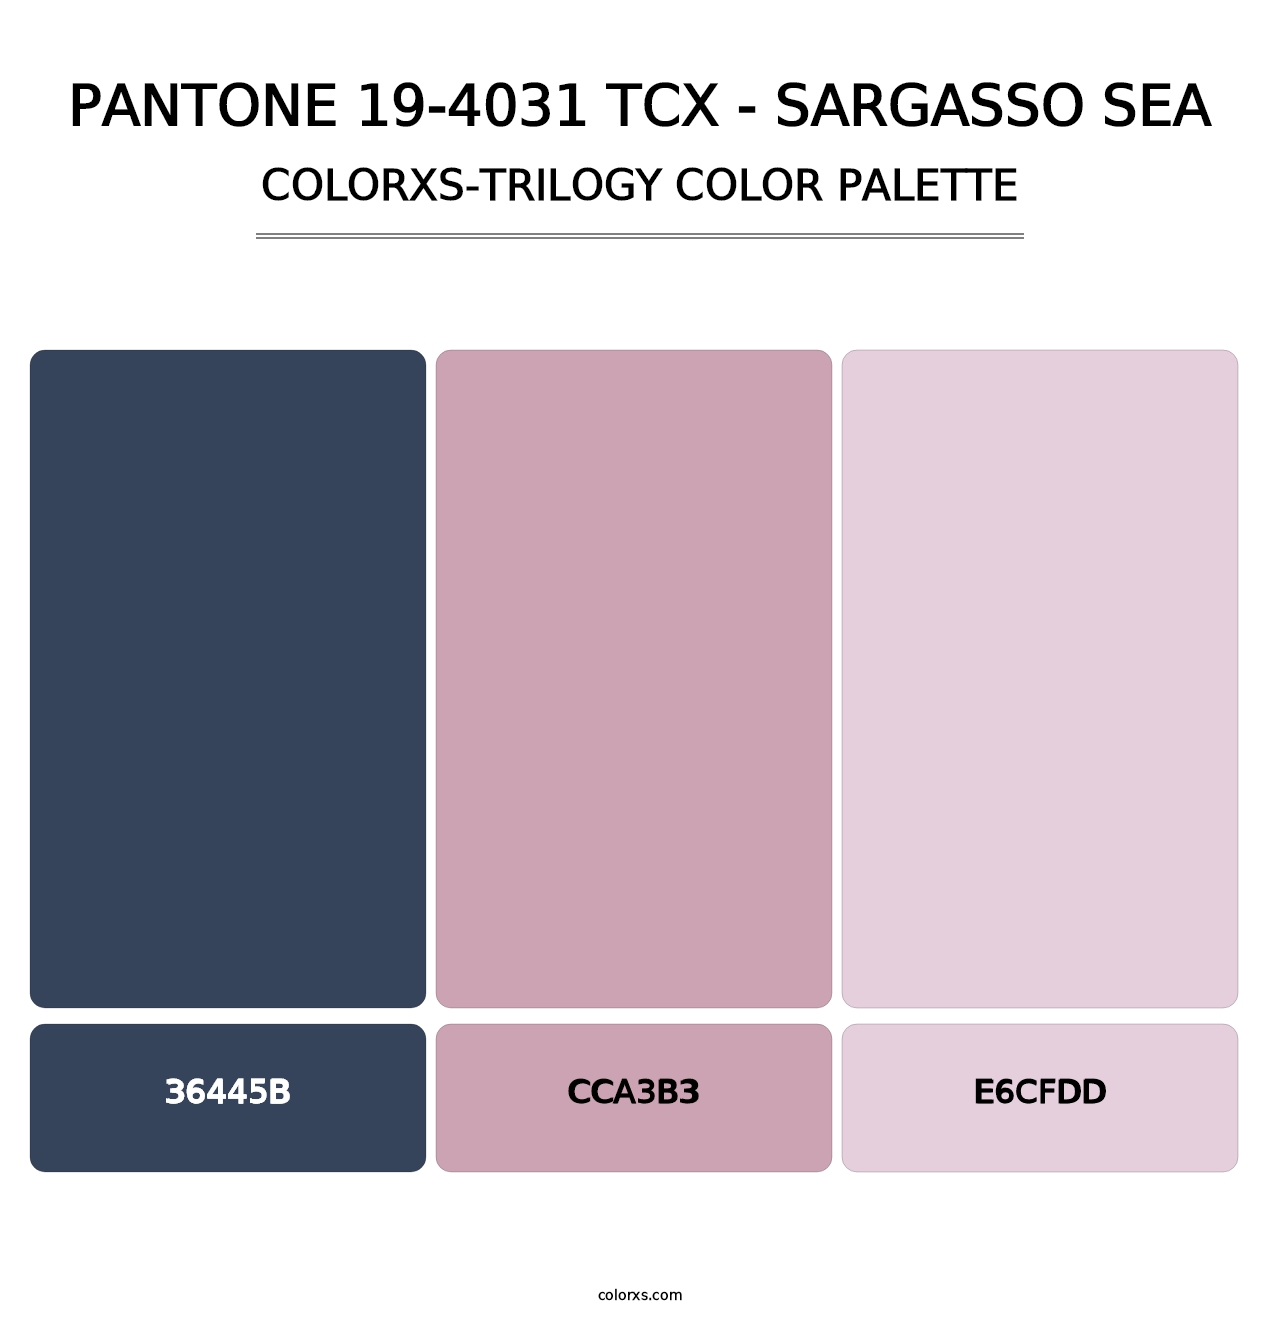 PANTONE 19-4031 TCX - Sargasso Sea - Colorxs Trilogy Palette